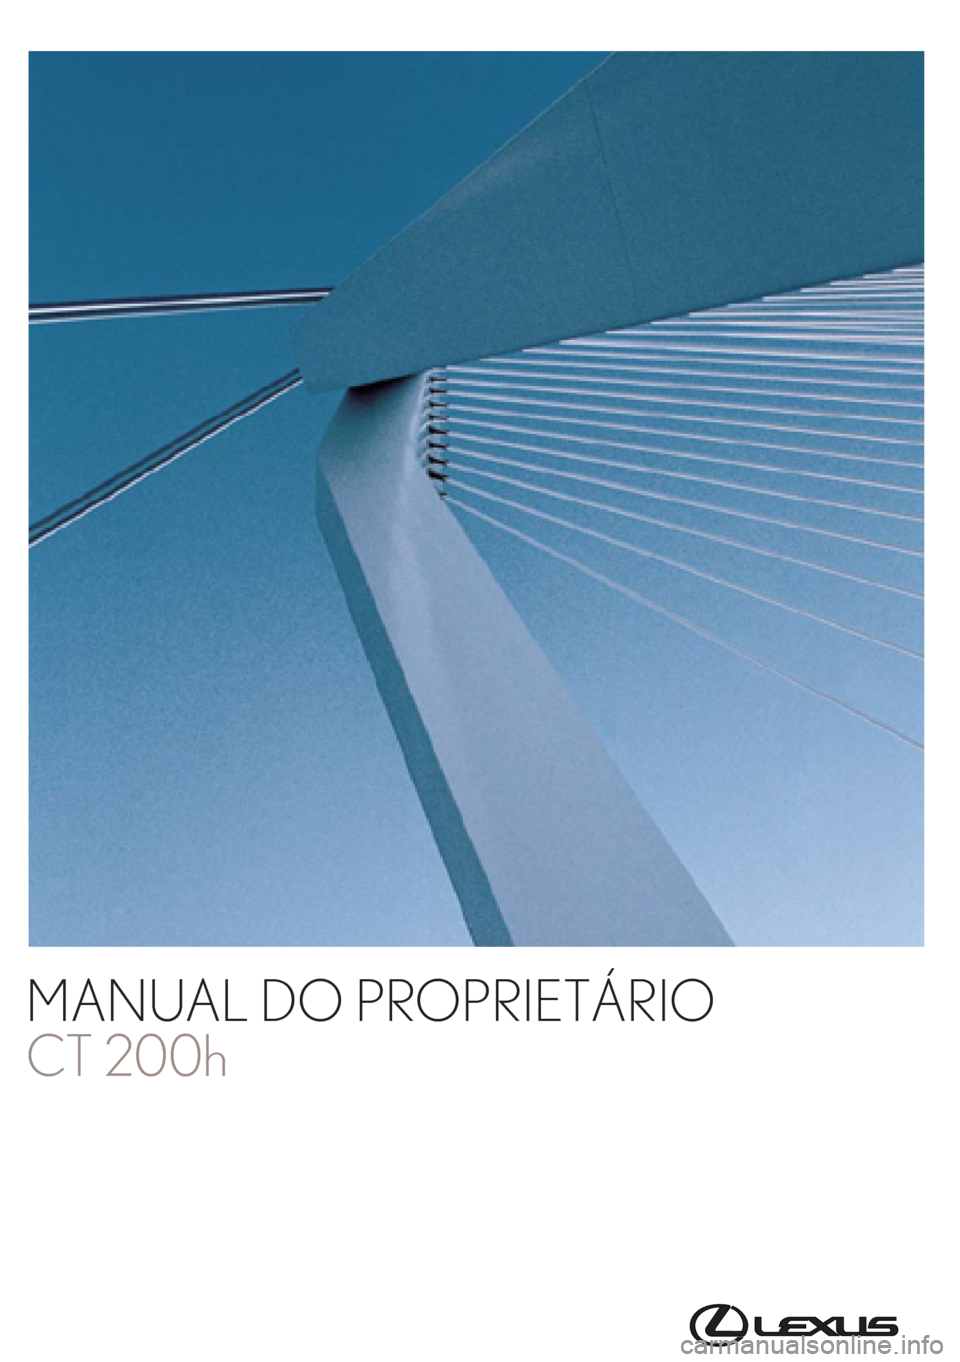 Lexus CT200h 2016  Manual do proprietário (in Portuguese) Toyota Caetano Portugal, S.A.
MANUAL DO PROPRIETÁRIO
CT 200h
CT 200h
Mod. OM76198PT
Public. N.º OM76198E
ORGAL-PORTO 